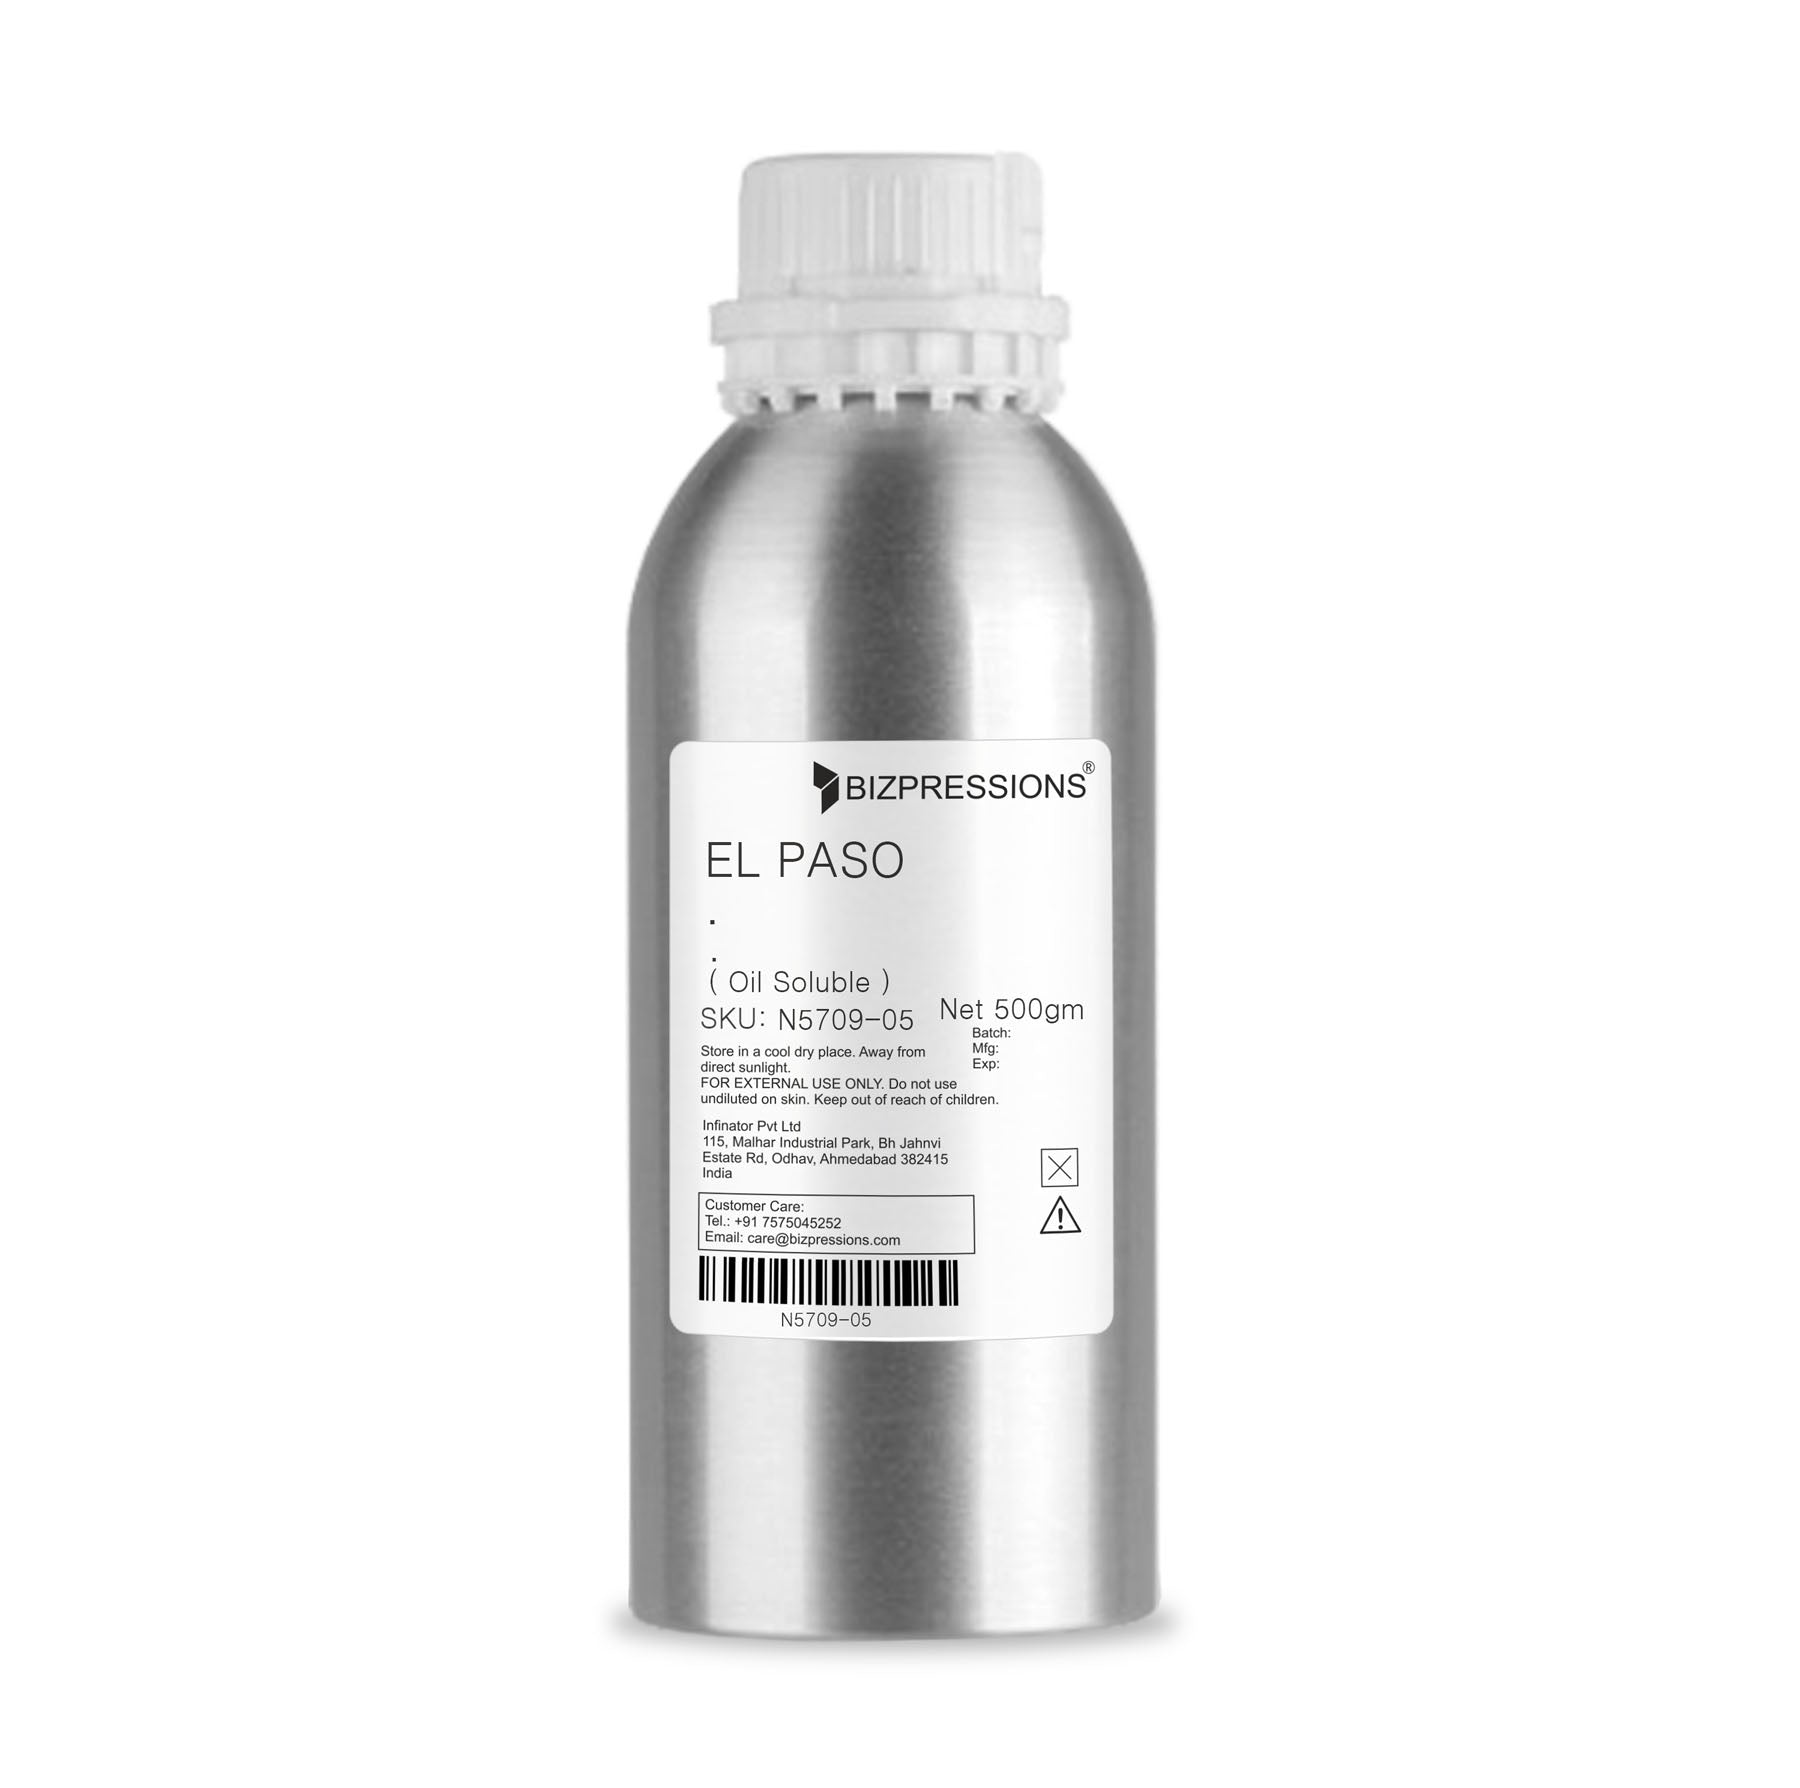 EL PASO - Fragrance ( Oil Soluble ) - 500 gm